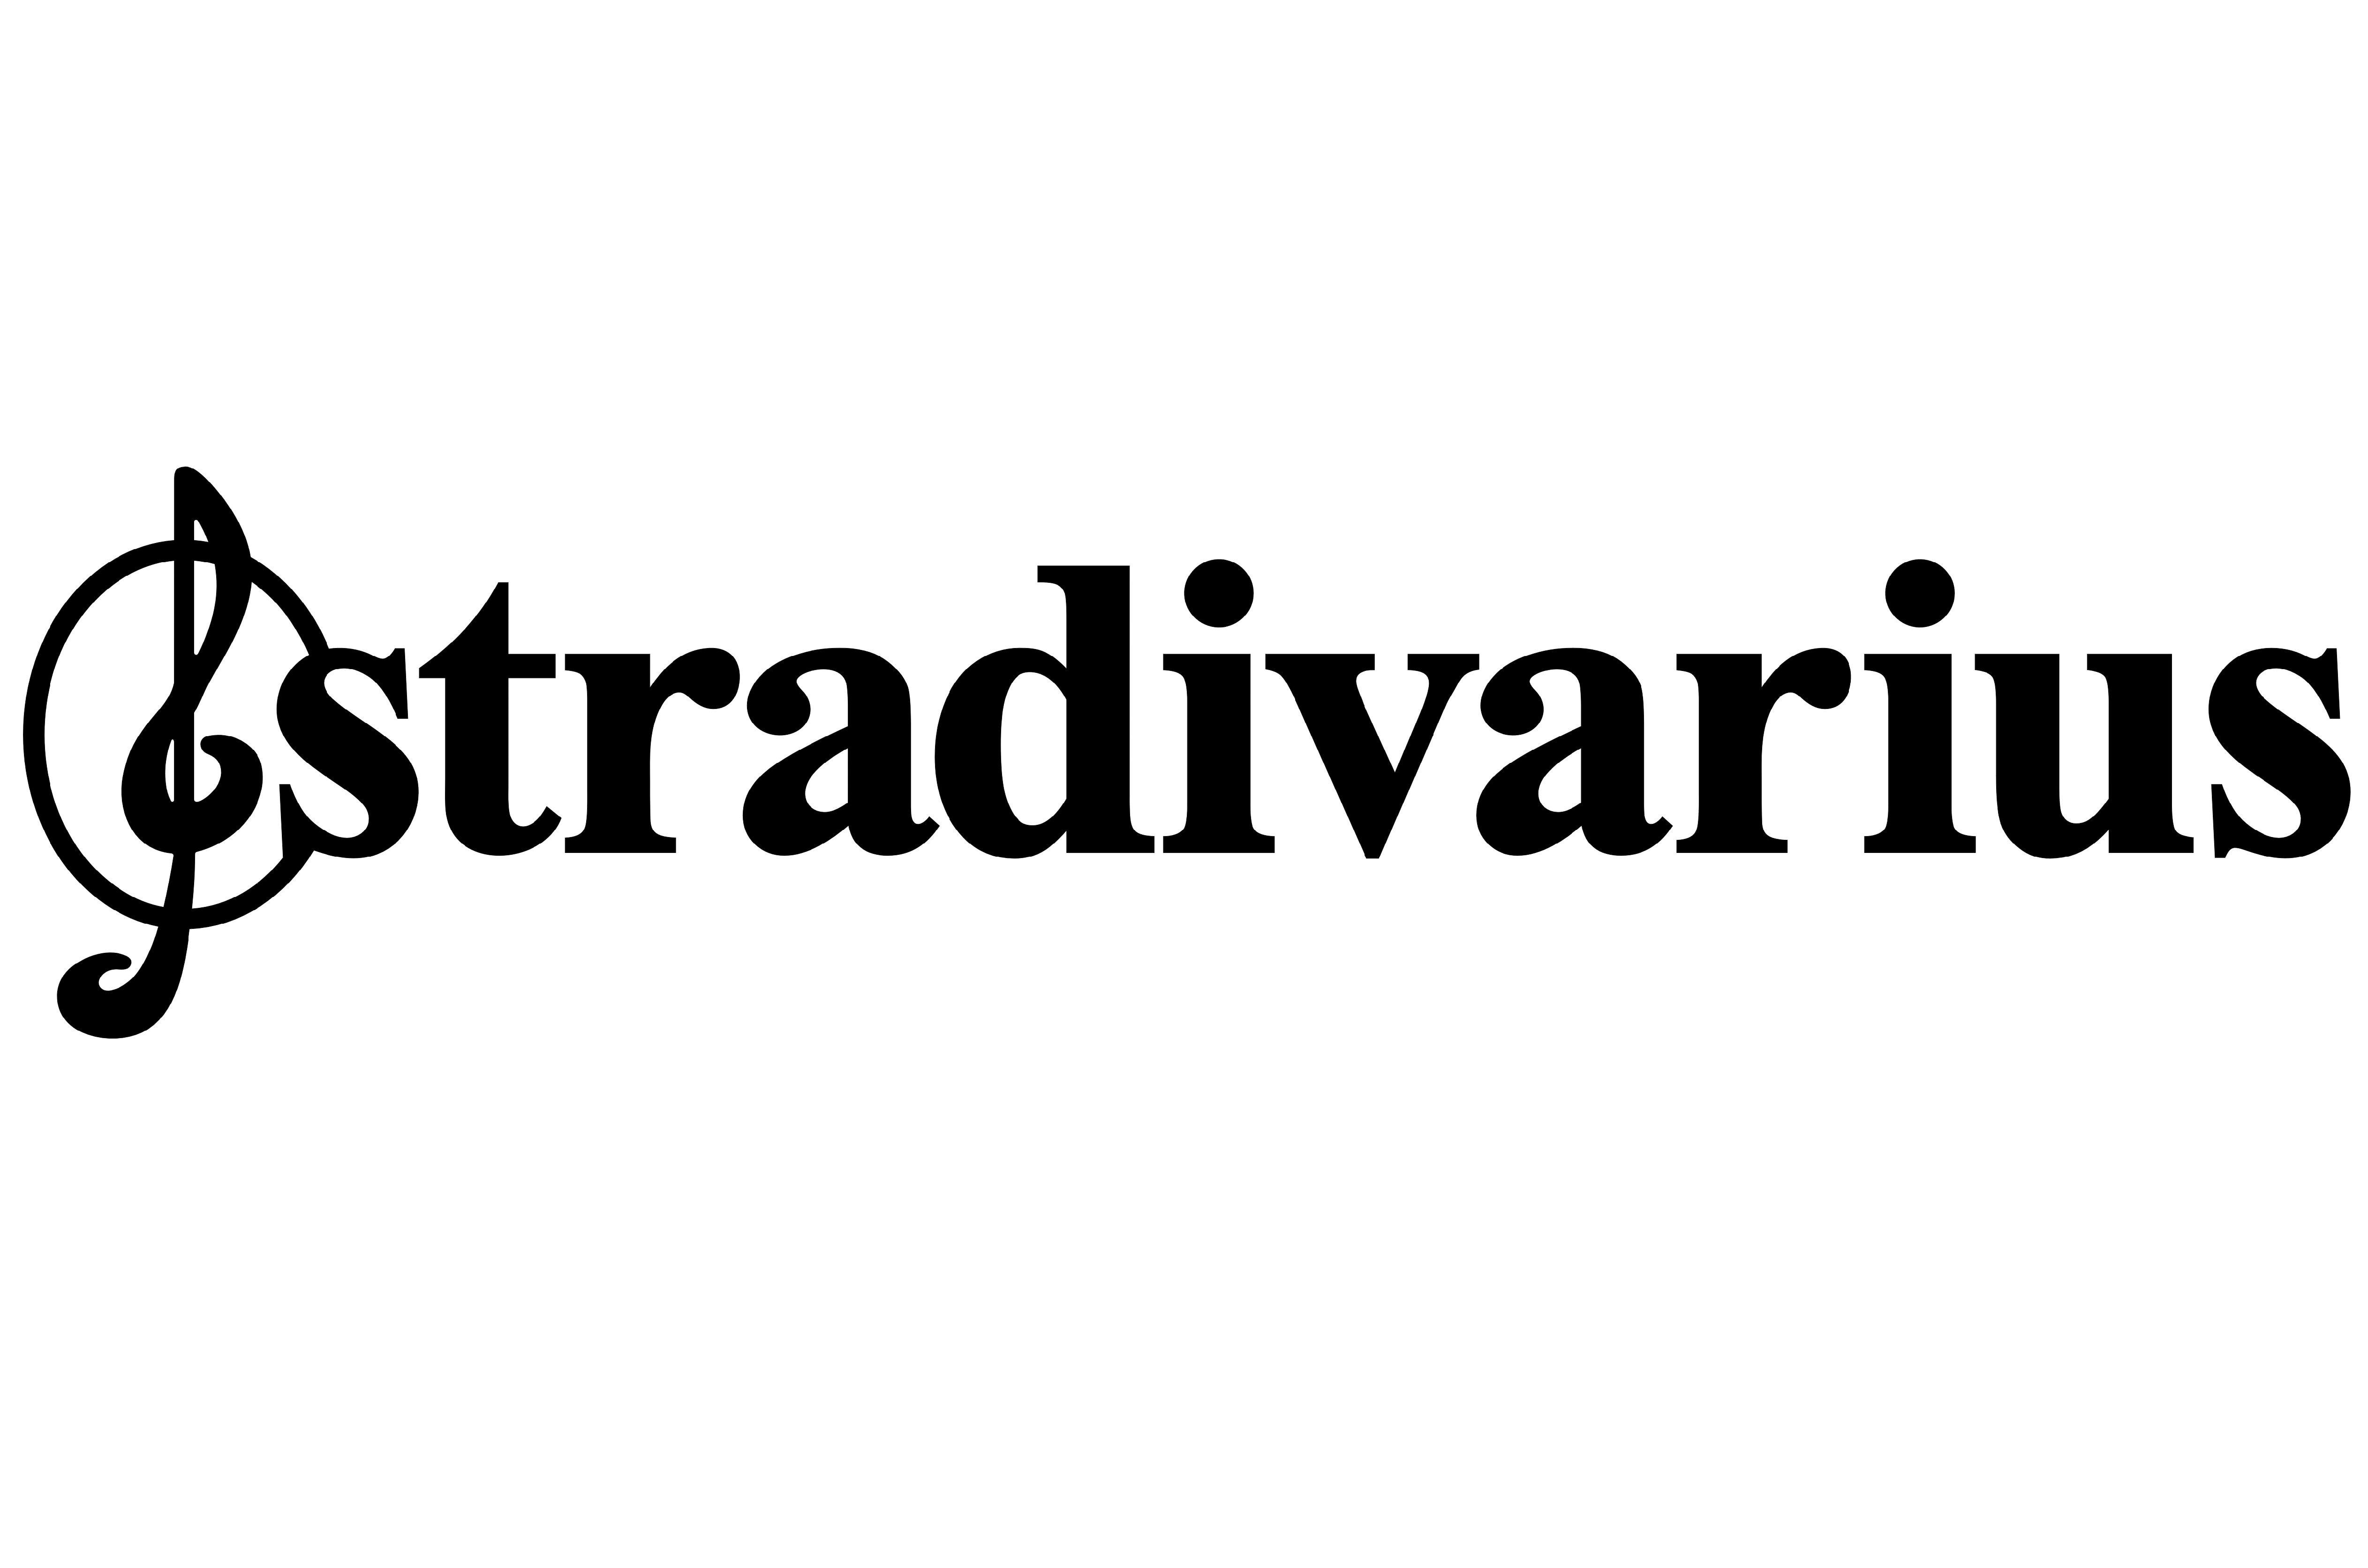 stradivarius buono regalocodice sconto stradivariusstradivarius codice sconto